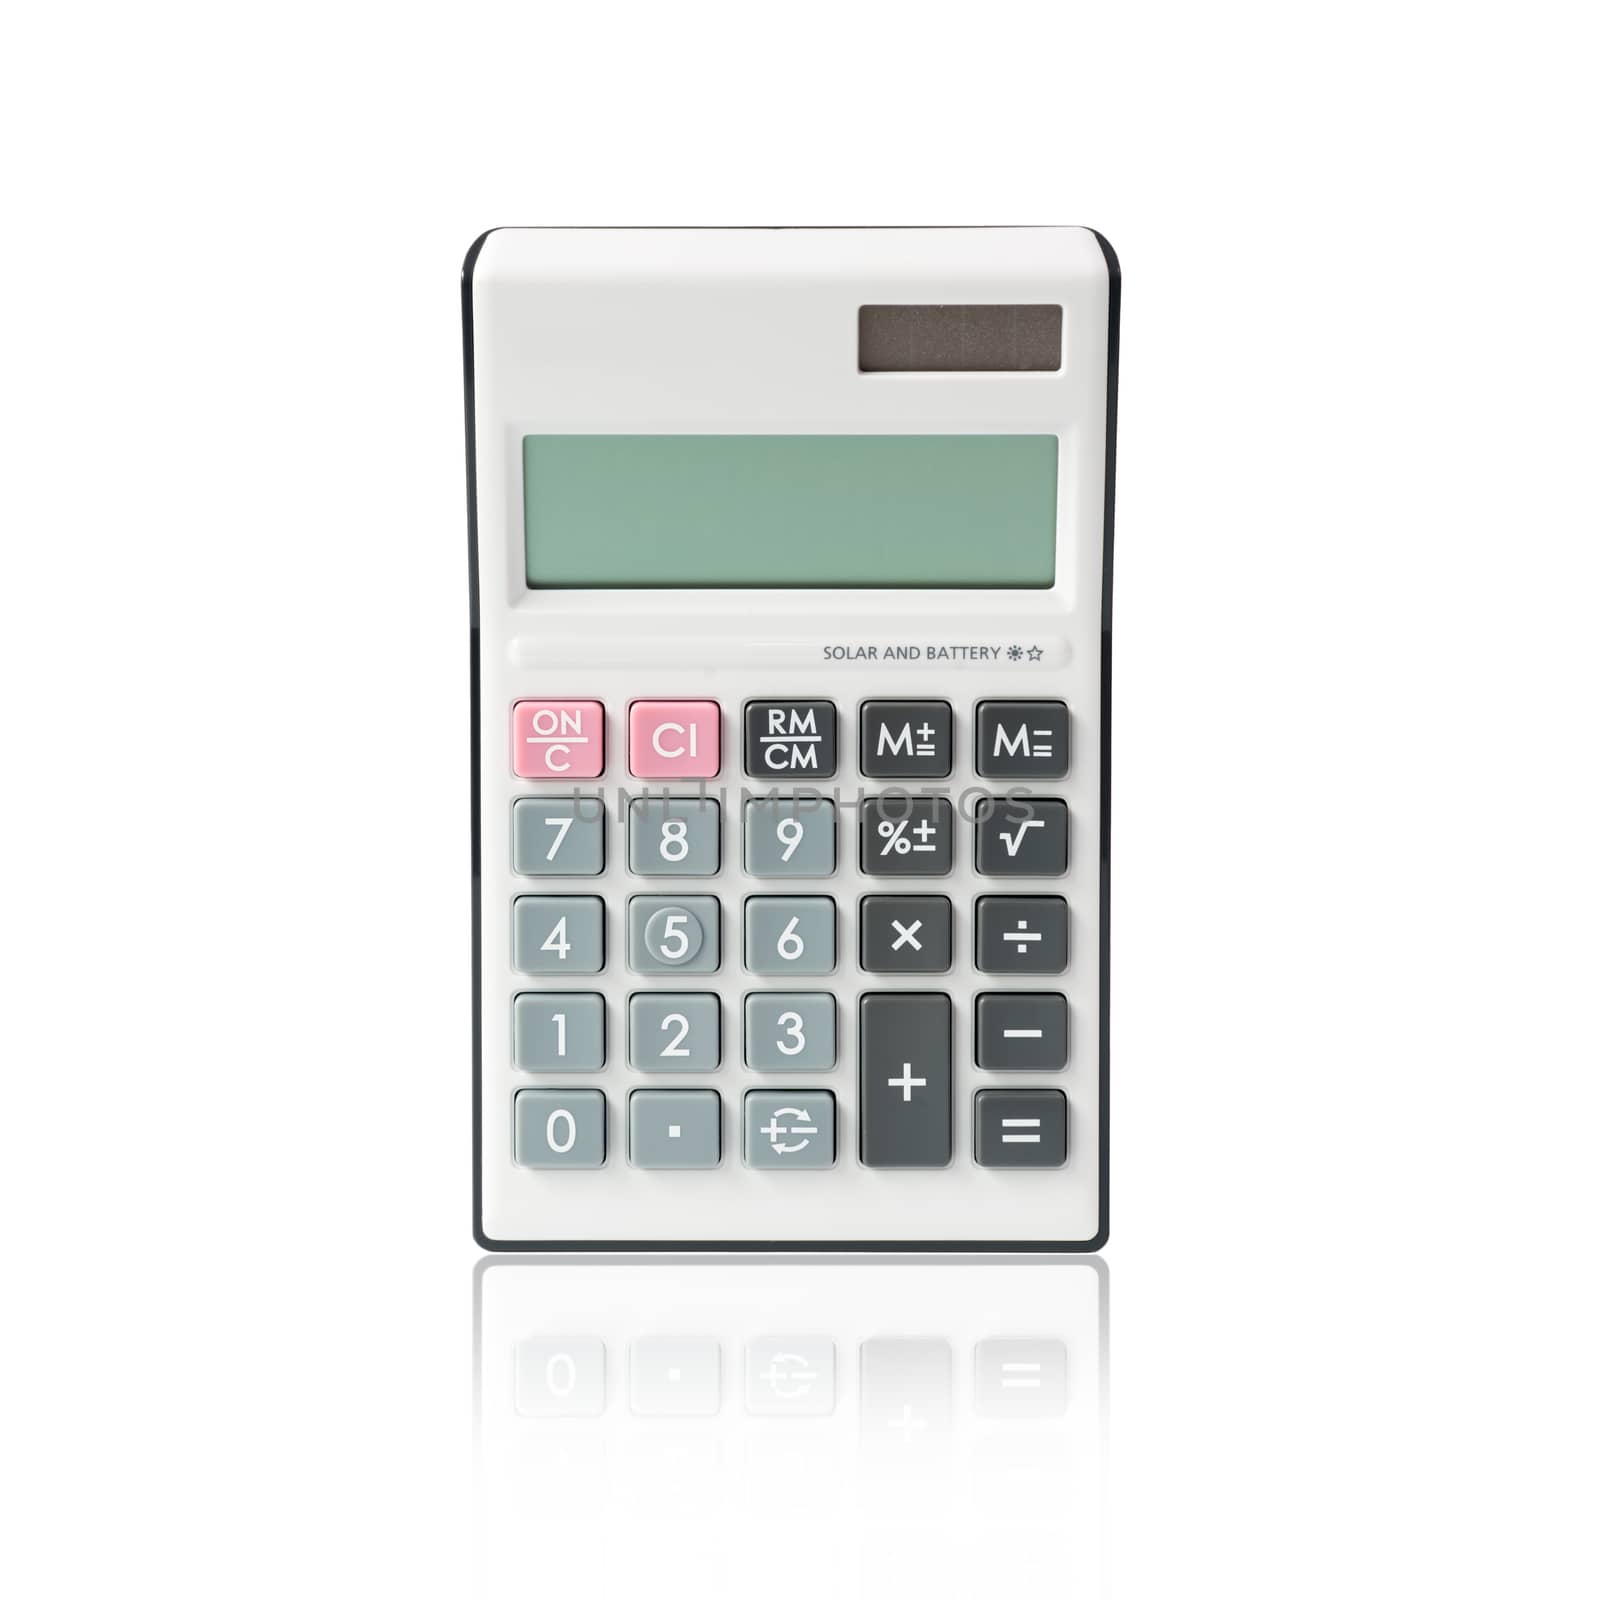 Calculator by Kenishirotie